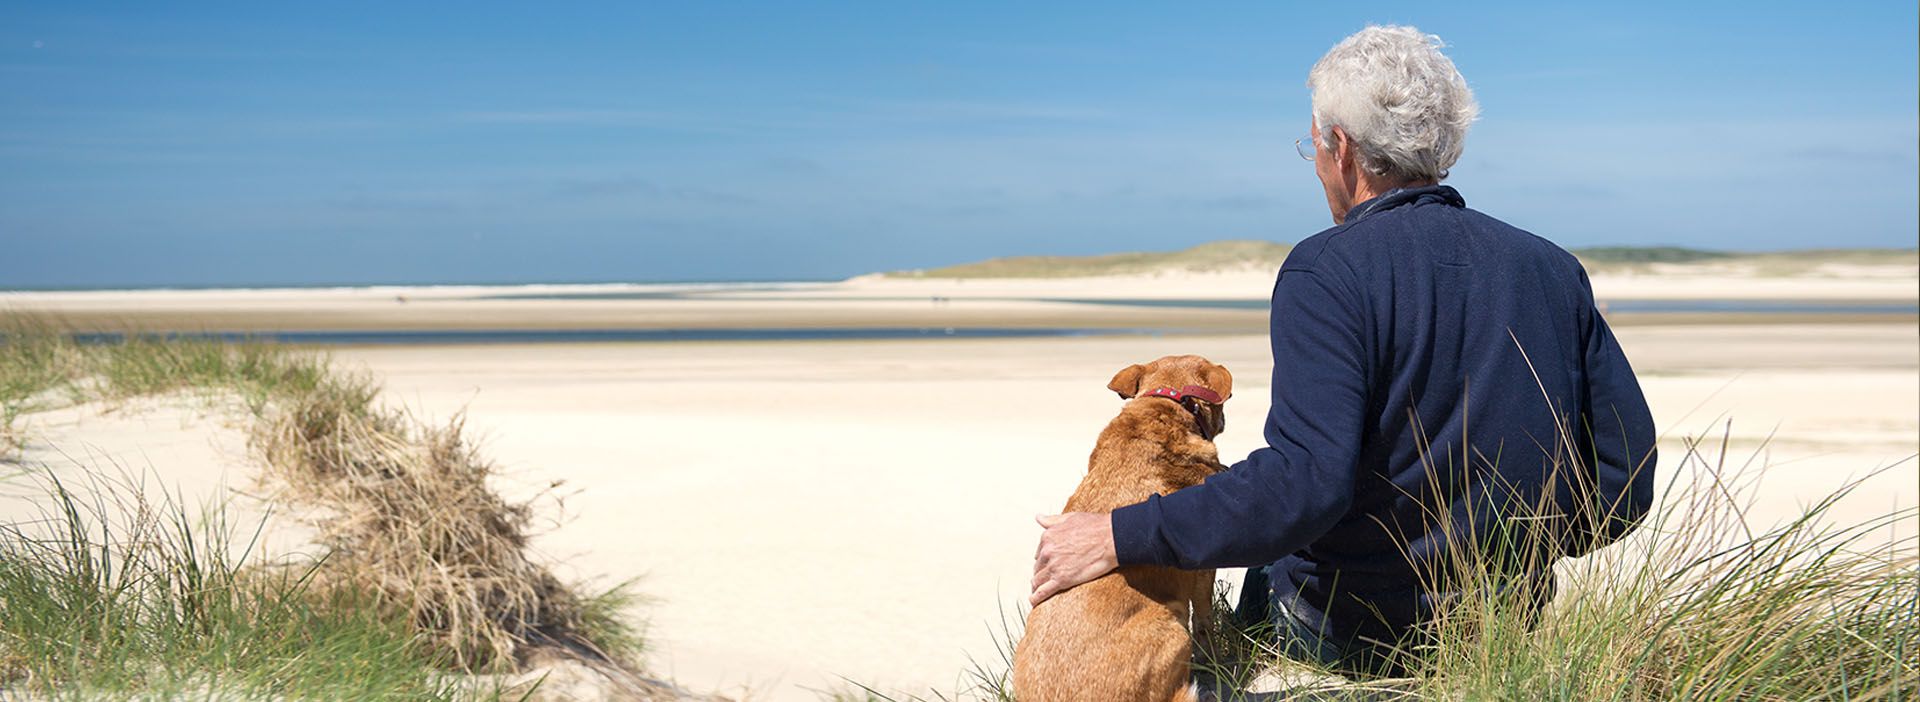 Mann und Hund sitzen am Strand und schauen aufs Meer